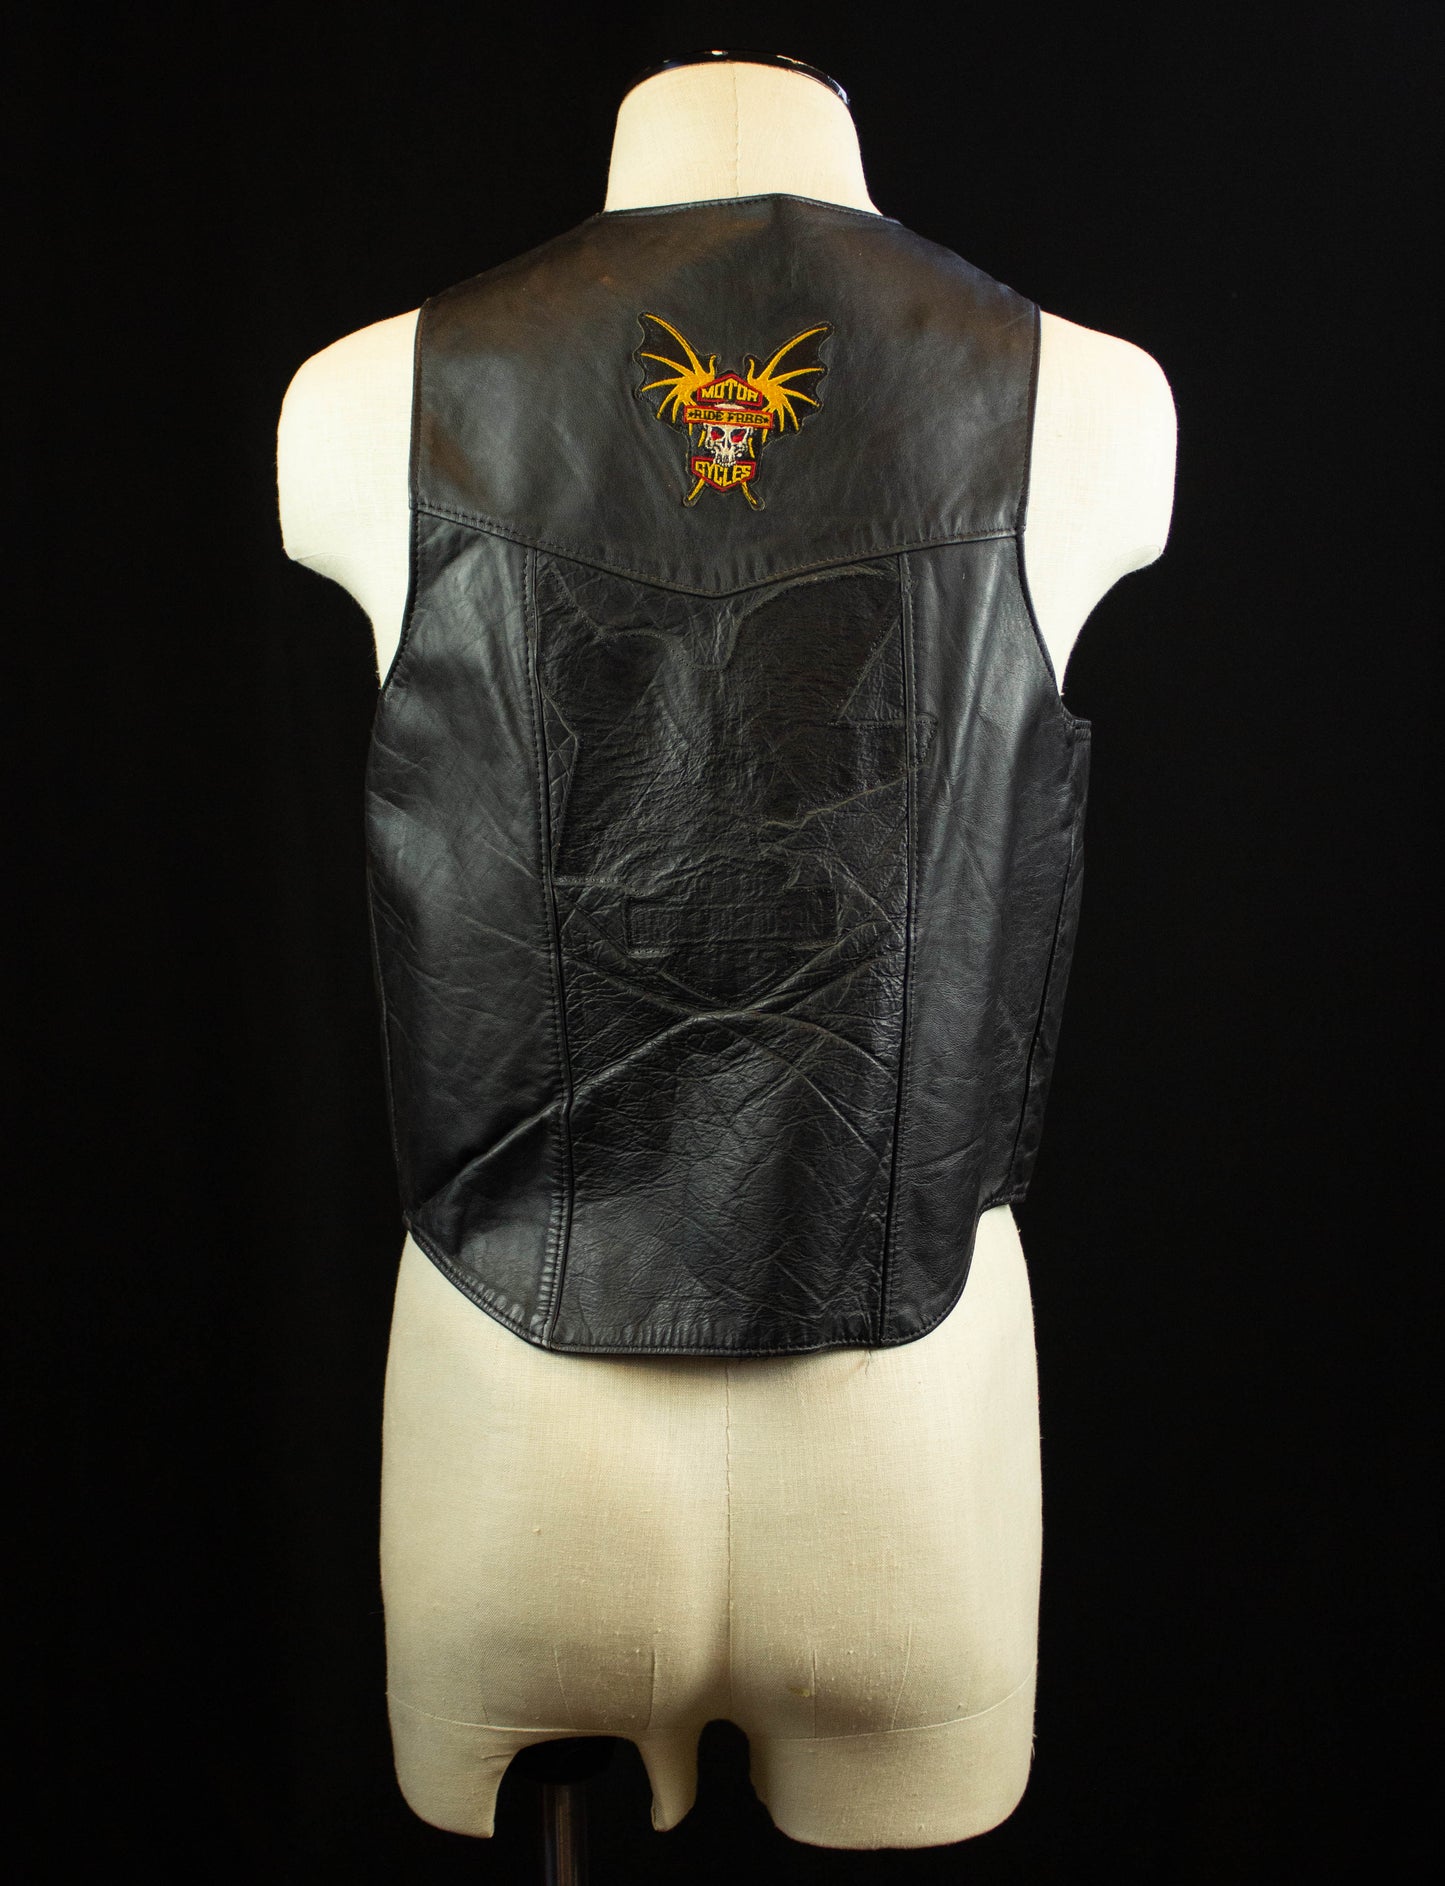 Vintage Steer Brand Harley Davidson Patched Leather Vest 80s Black Biker Medium